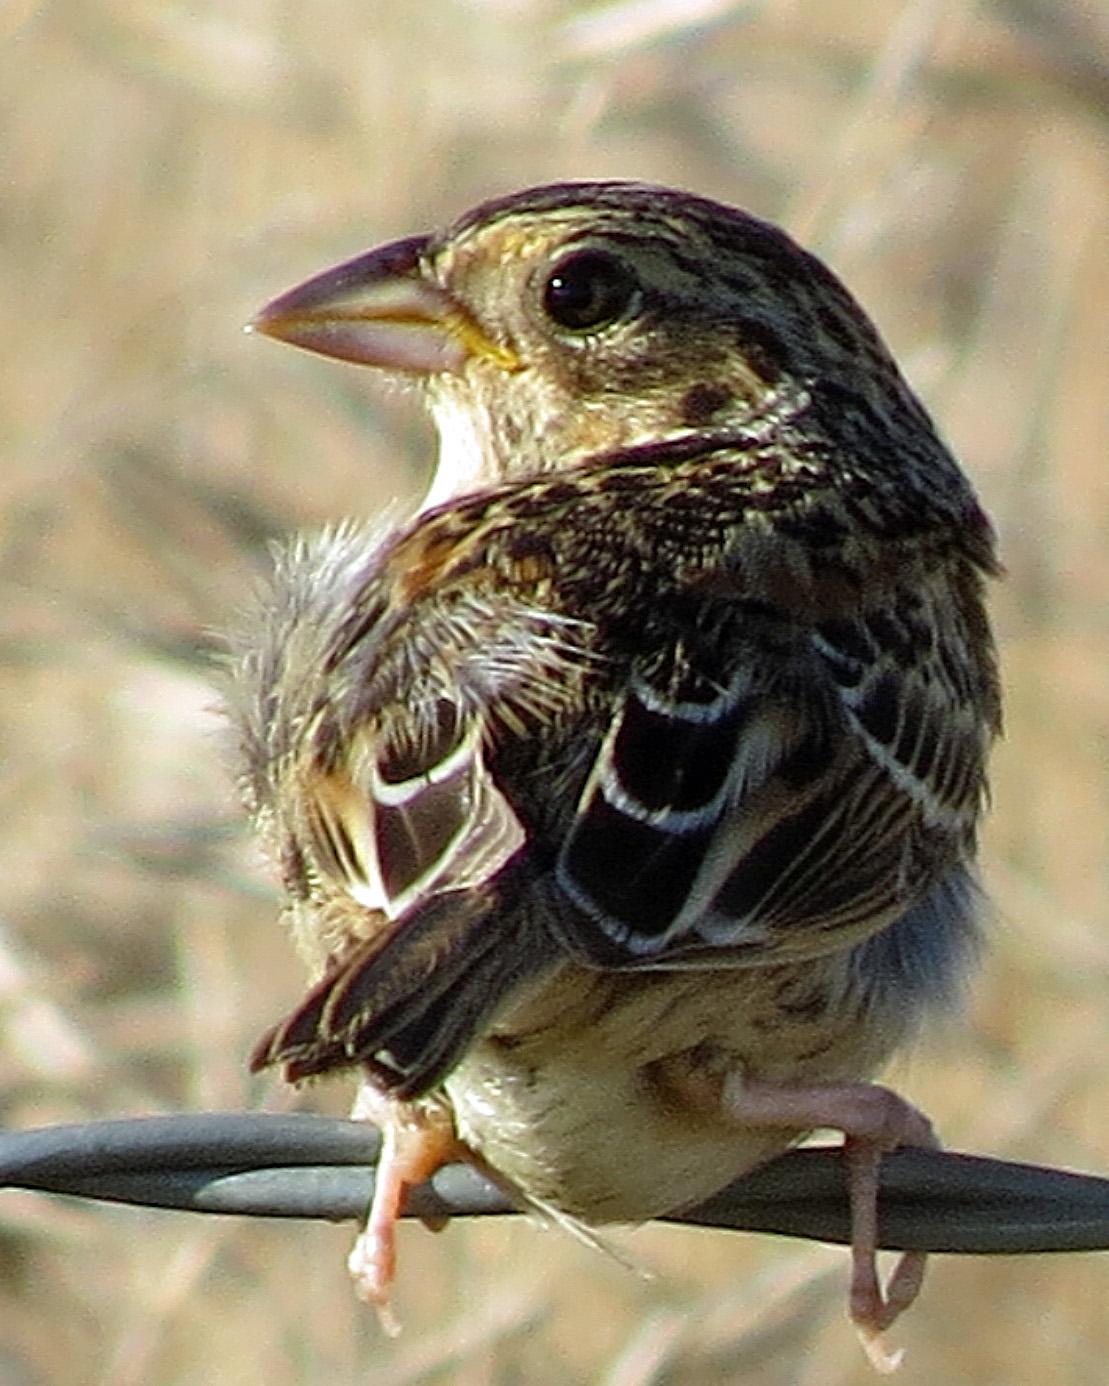 Grasshopper Sparrow Photo by Kelly Preheim